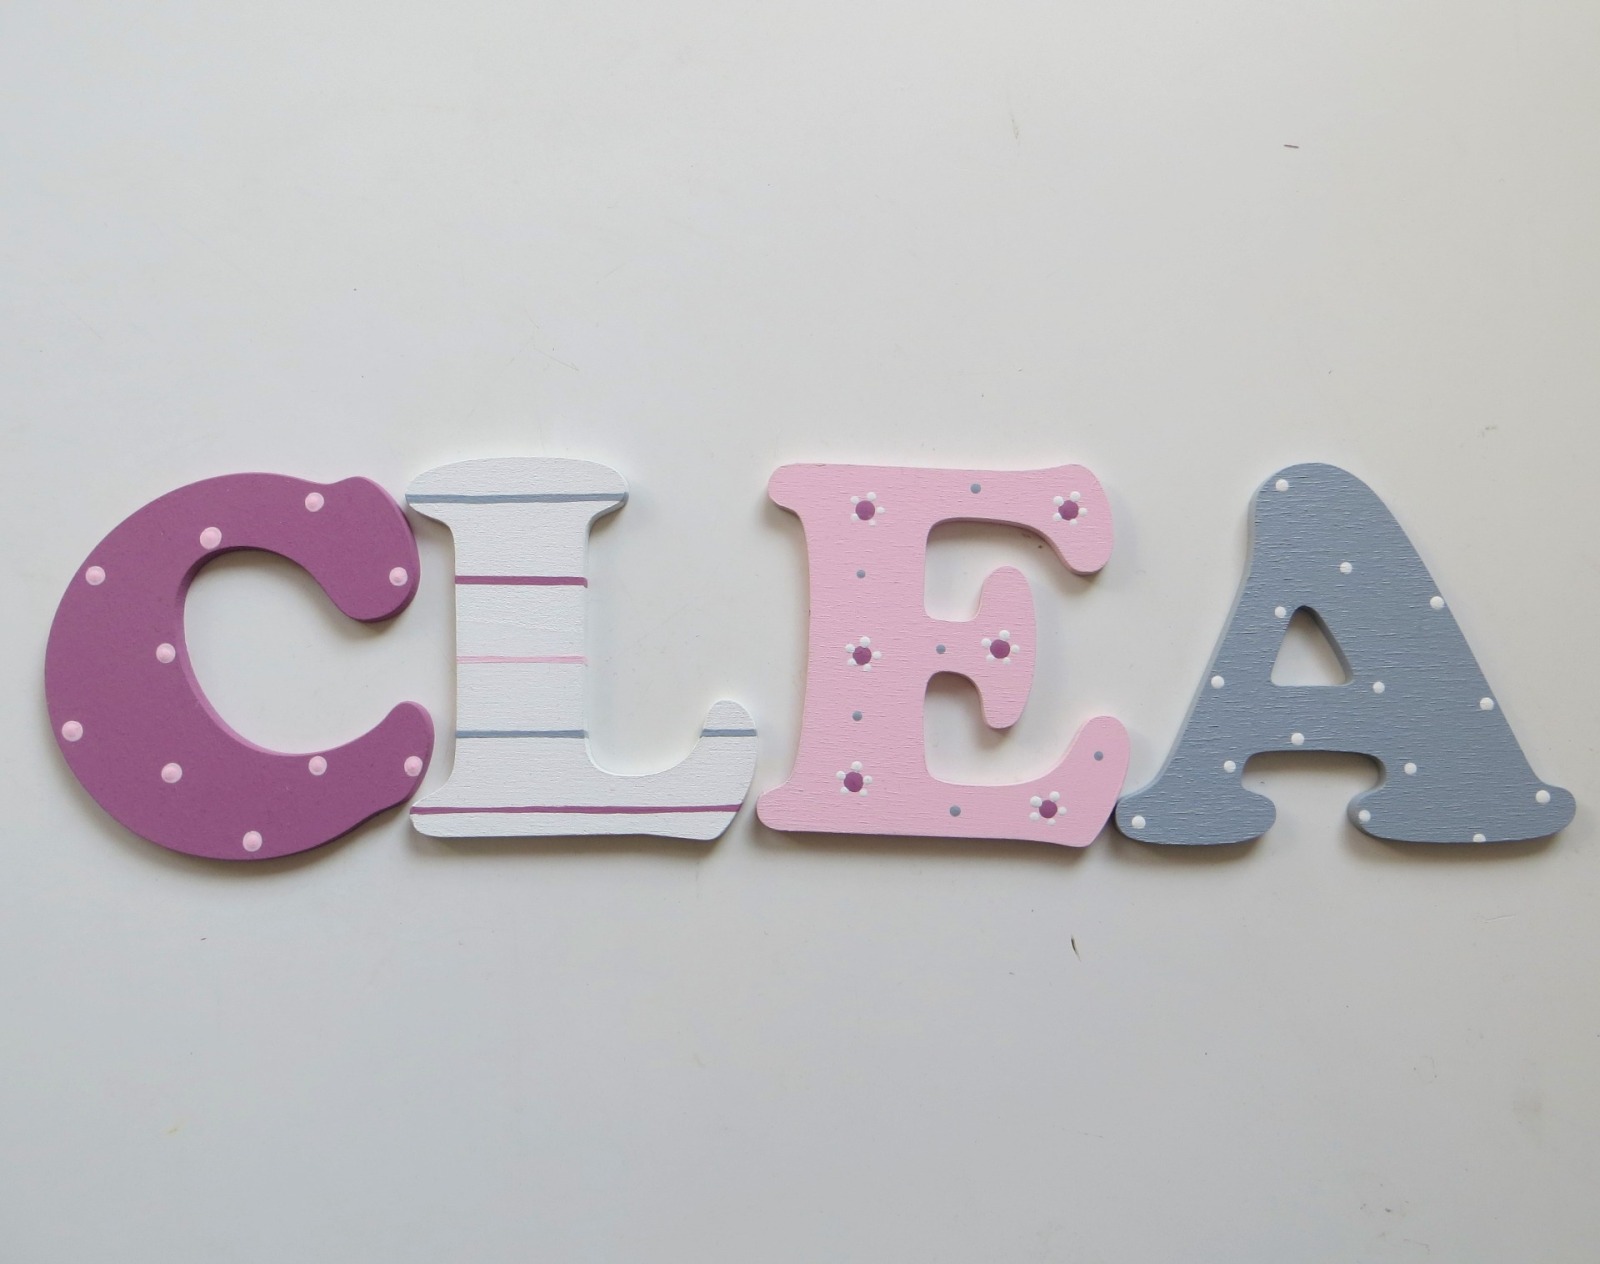 8cm Holzbuchstaben Kinderzimmer personalisiert in malve, rose, grau und weiß